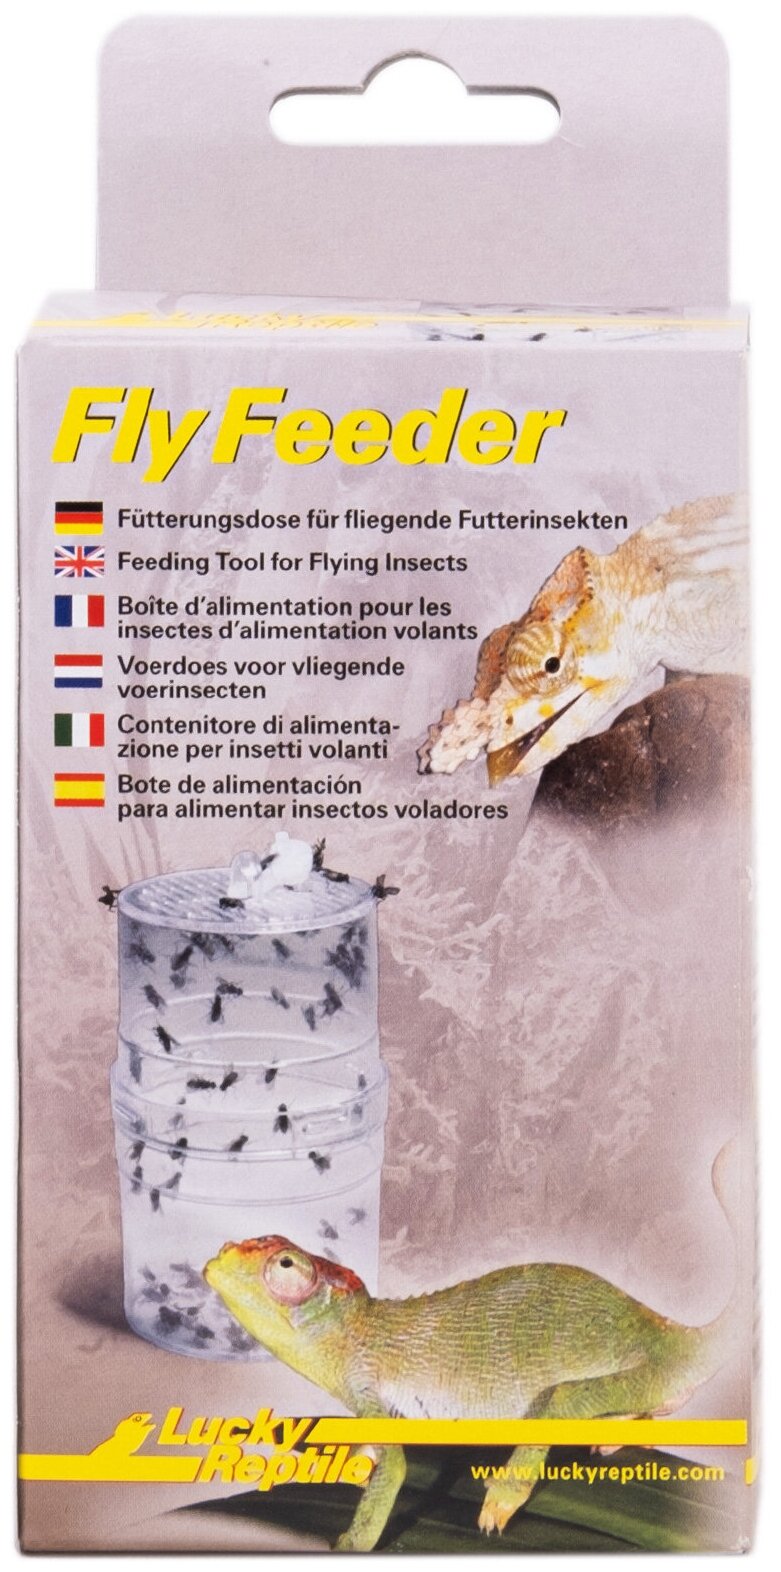 Контейнер для содержания кормовых летающих насекомых LUCKY REPTILE "Fly Feeder" (Германия)